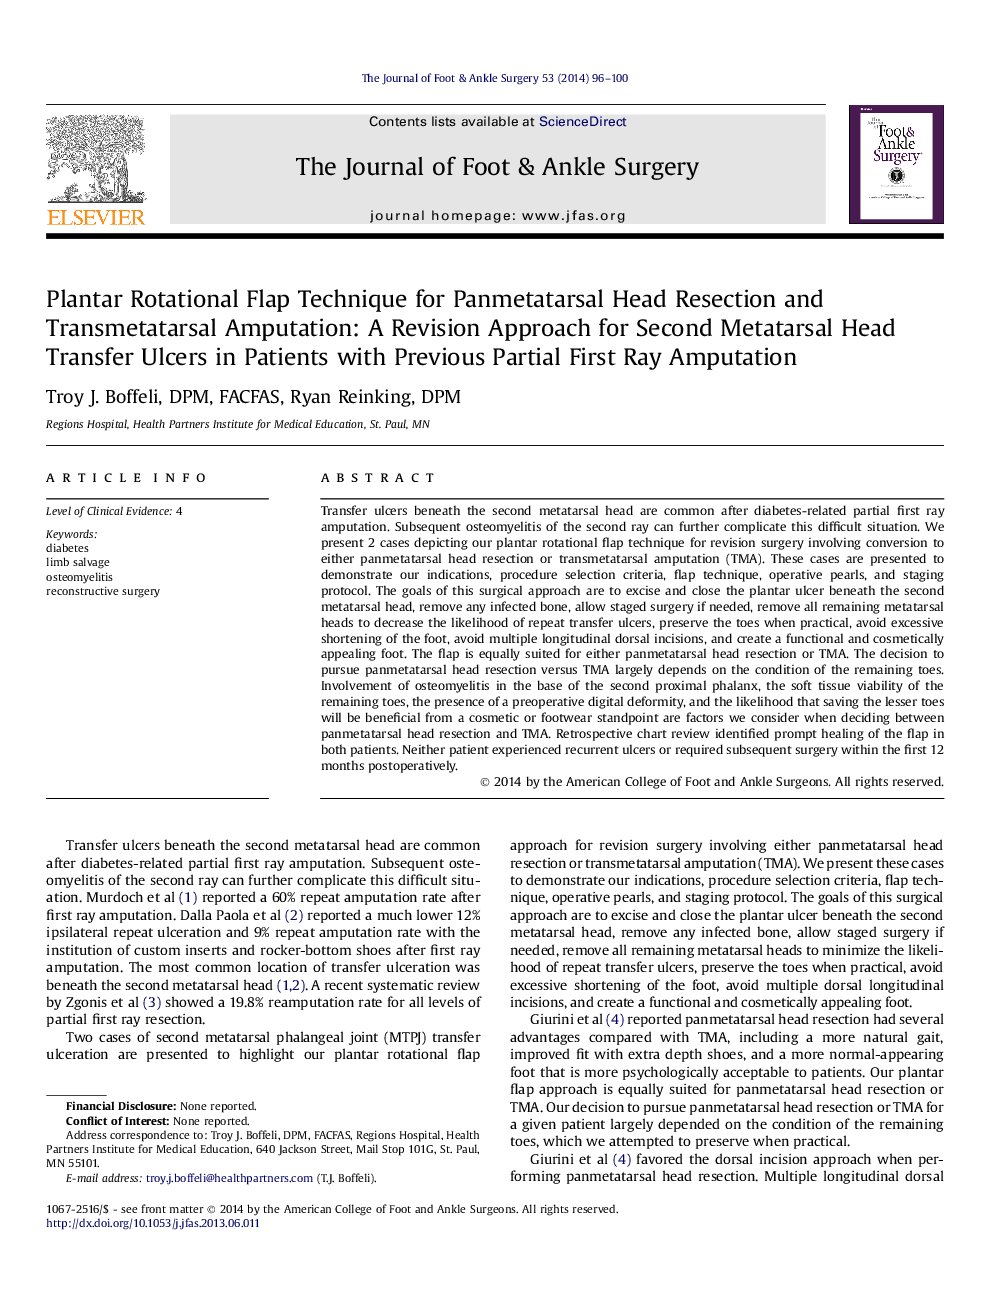 تکنیک فلپ چرخشی پایدار برای پوسیدگی سر و صورت پان متاتارسار و قطعه شده: یک روش بازبینی برای سرطان دوم انتقال دهنده سر در بیماران مبتلا به قطع عضو اول 